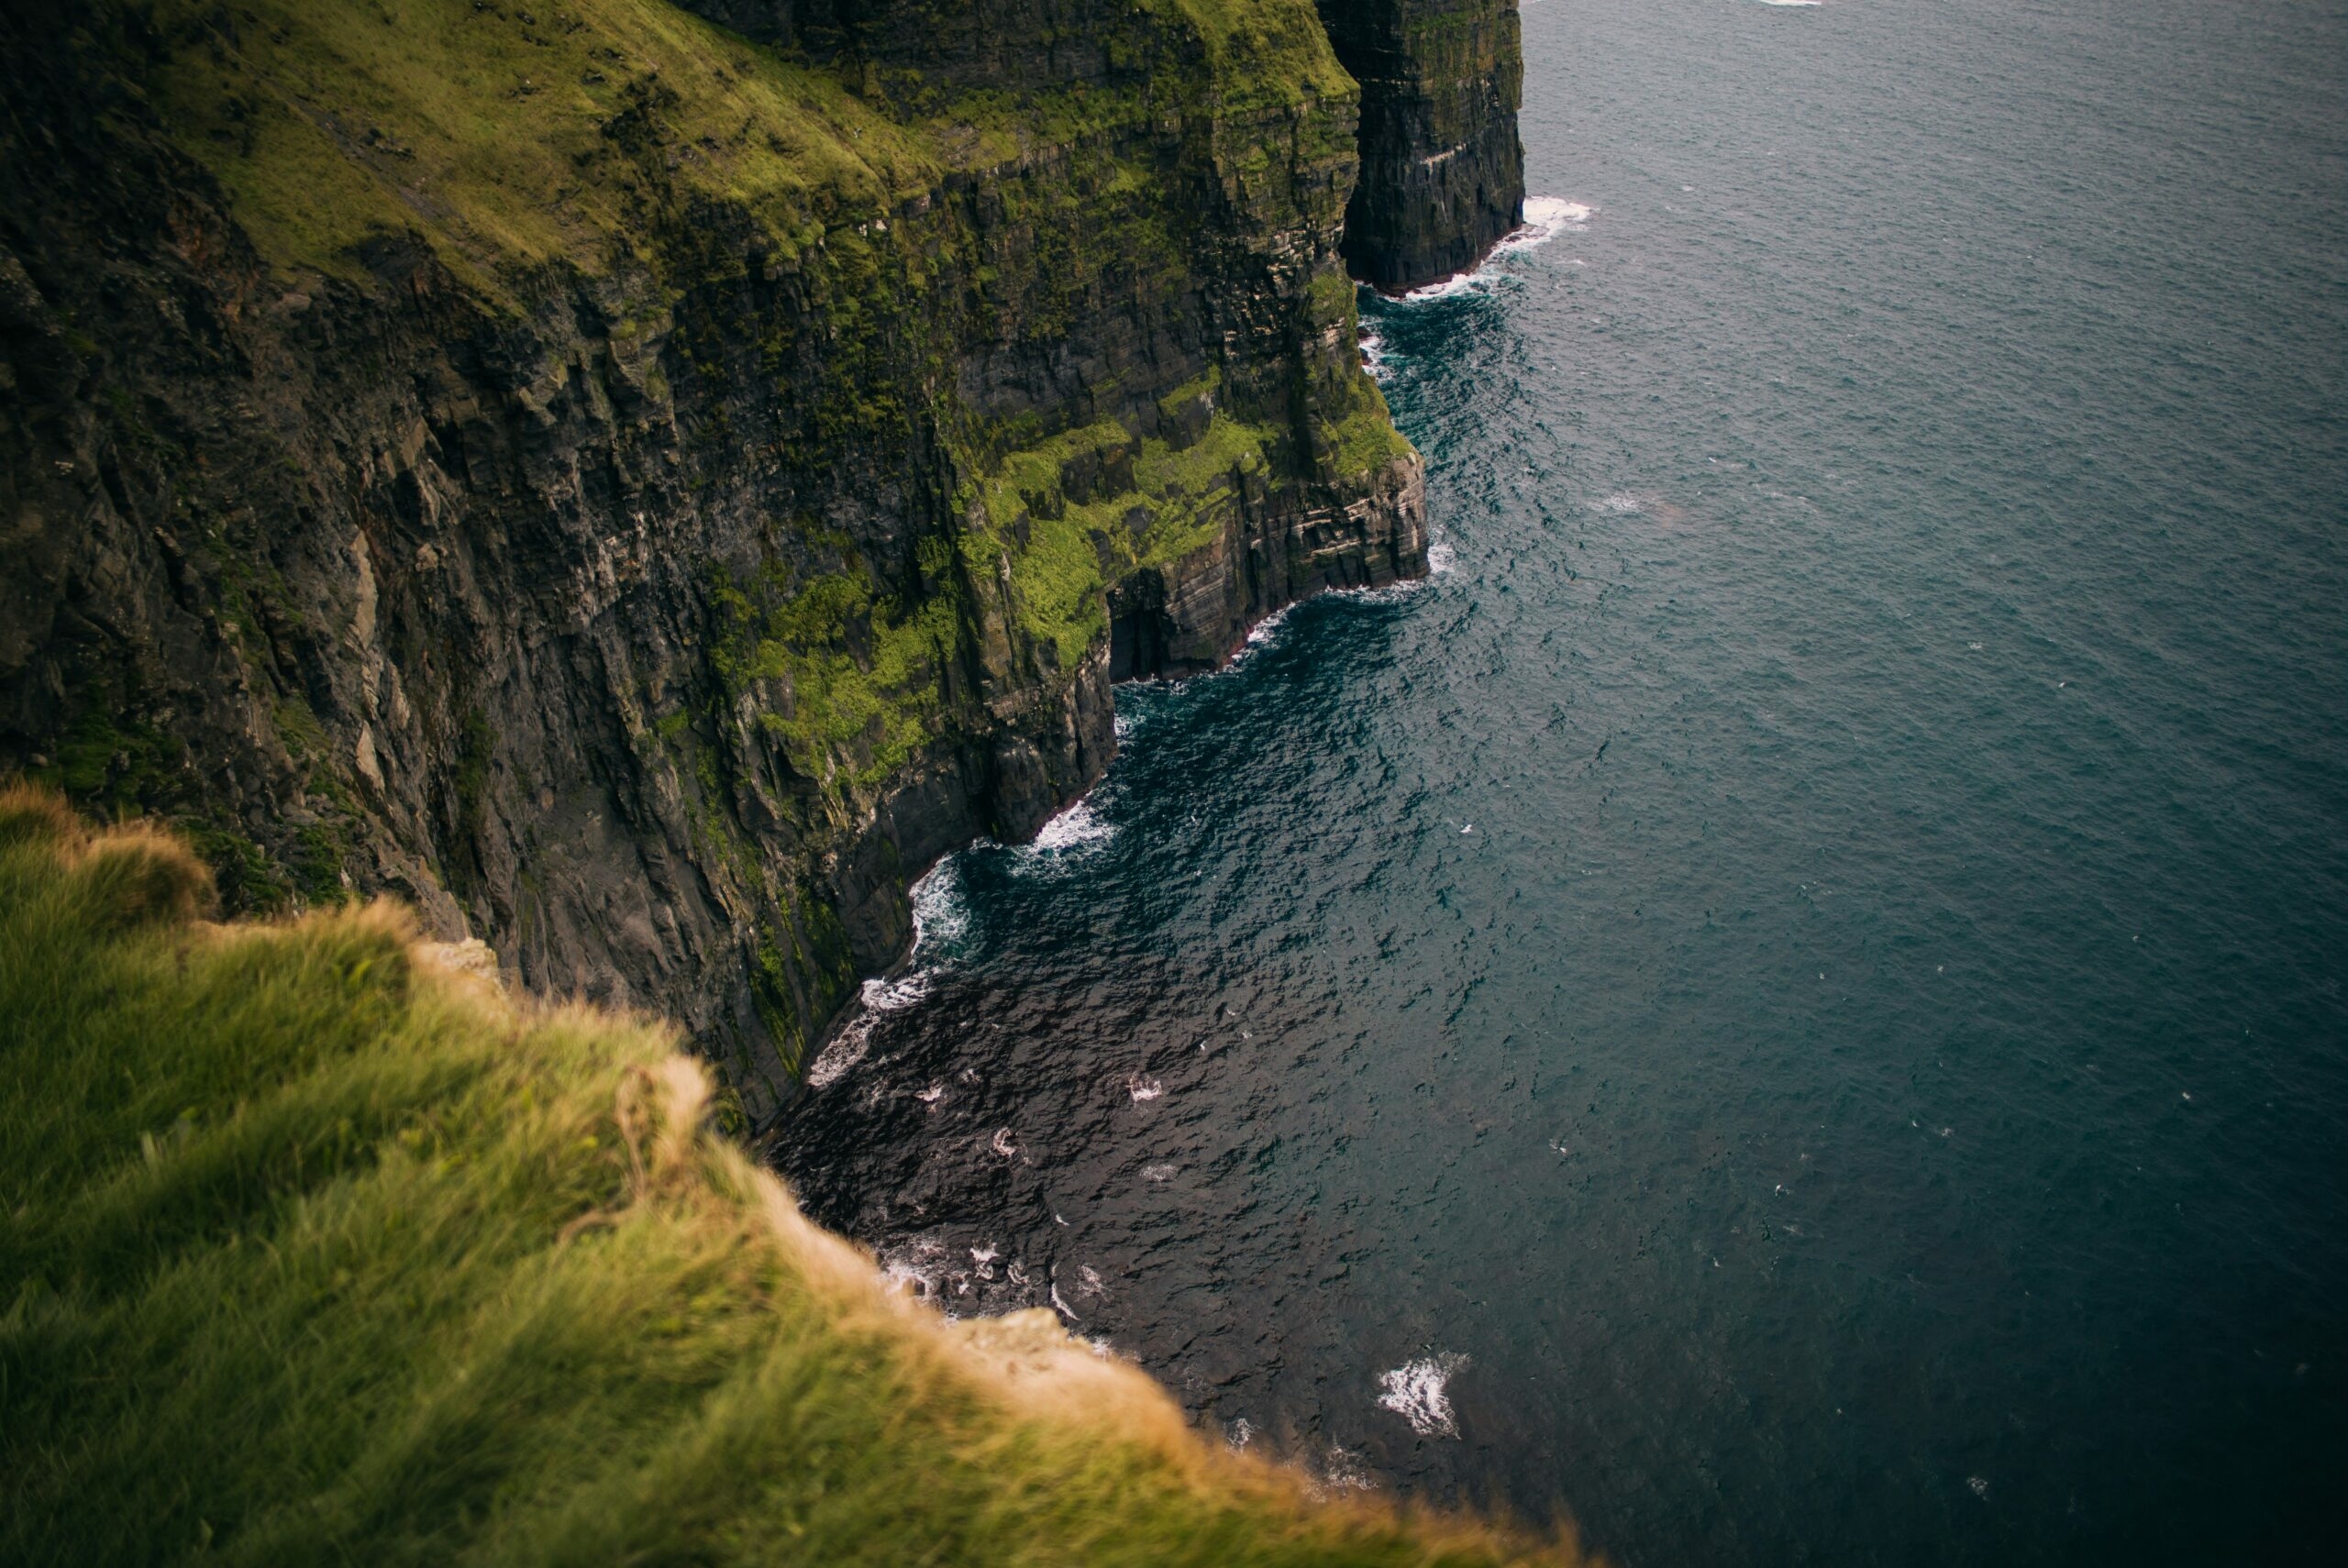 В Ирландии девушка оступилась и улетела со скалы высотой 214 метров